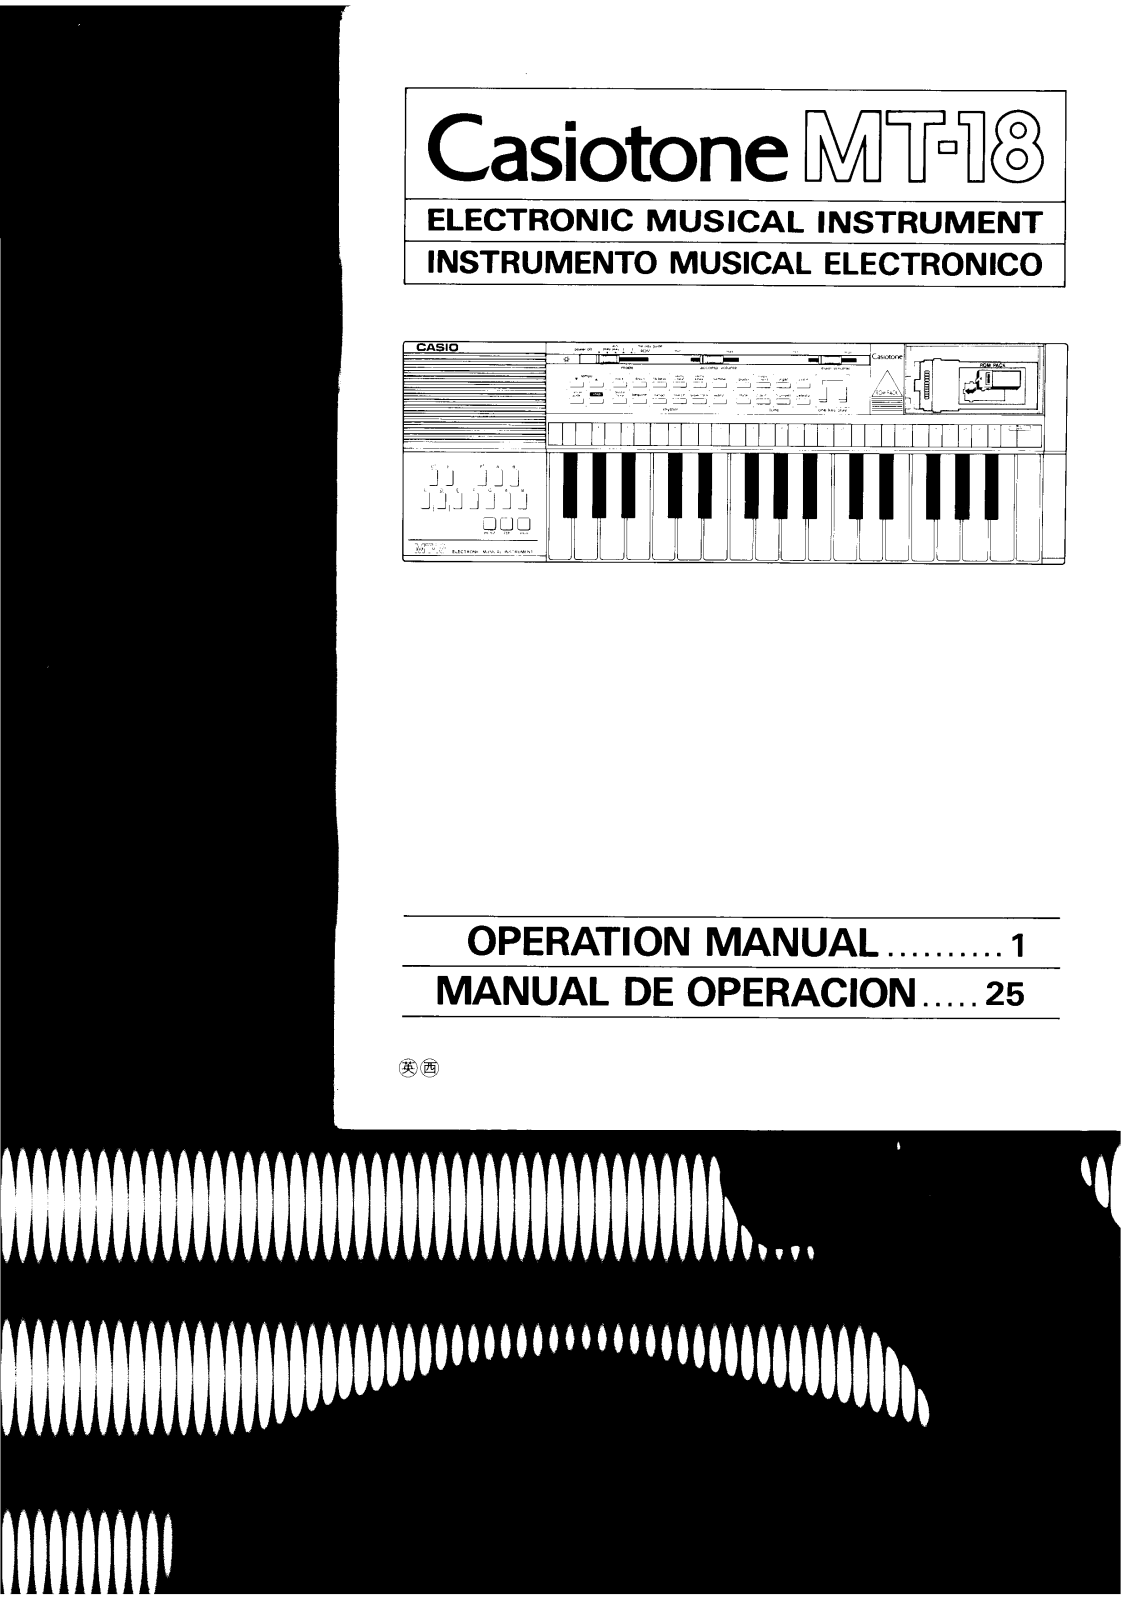 Casio MT-18 User Manual